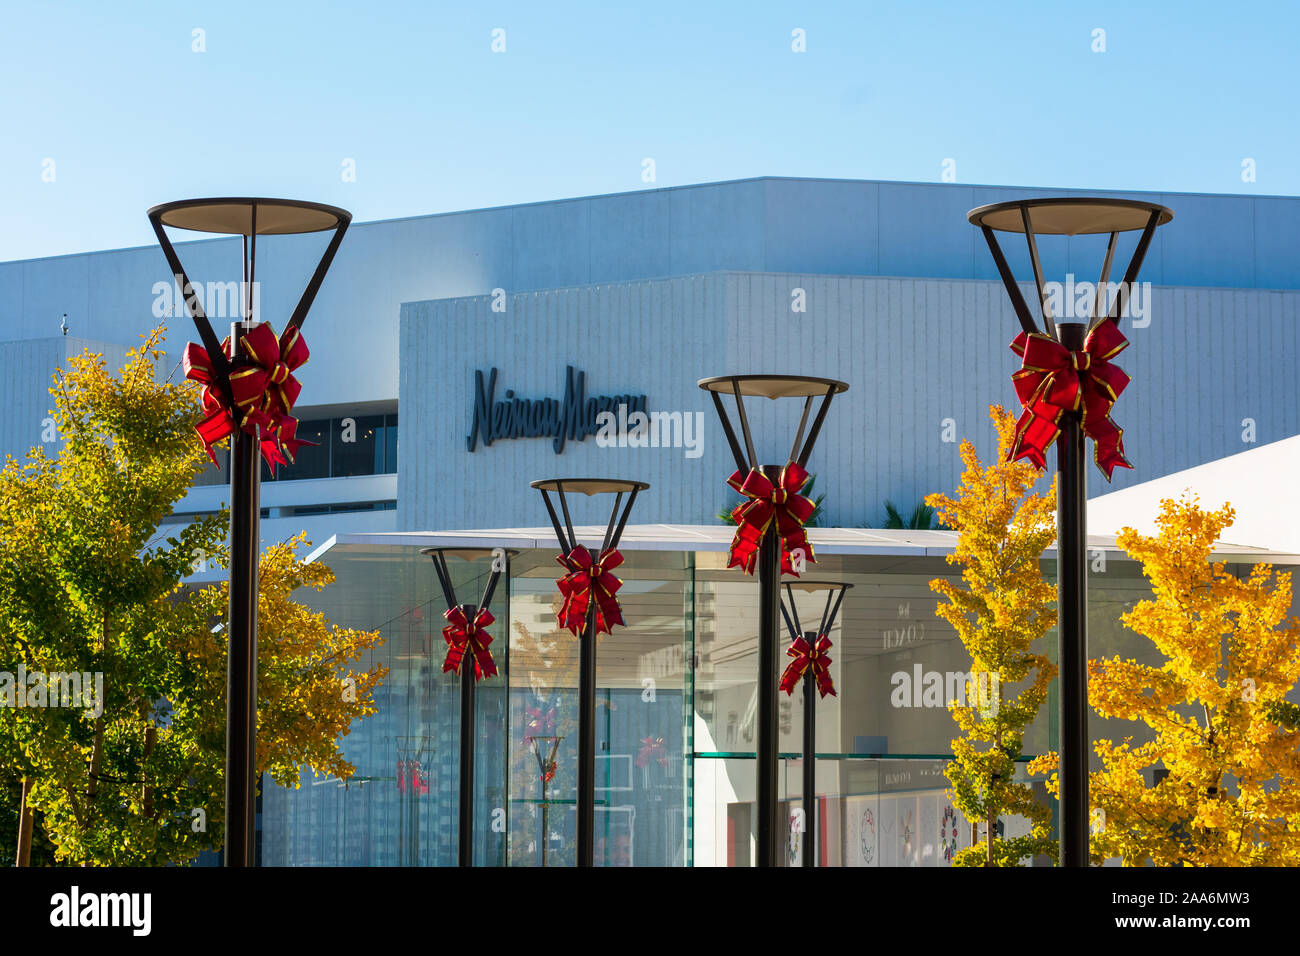 Vacances de Noël arcs sur des lampadaires, arbres aux couleurs de l'automne jaune incroyable Neiman Marcus luxury department store - Palo Alto, CA, USA - Novembre 2019 Banque D'Images